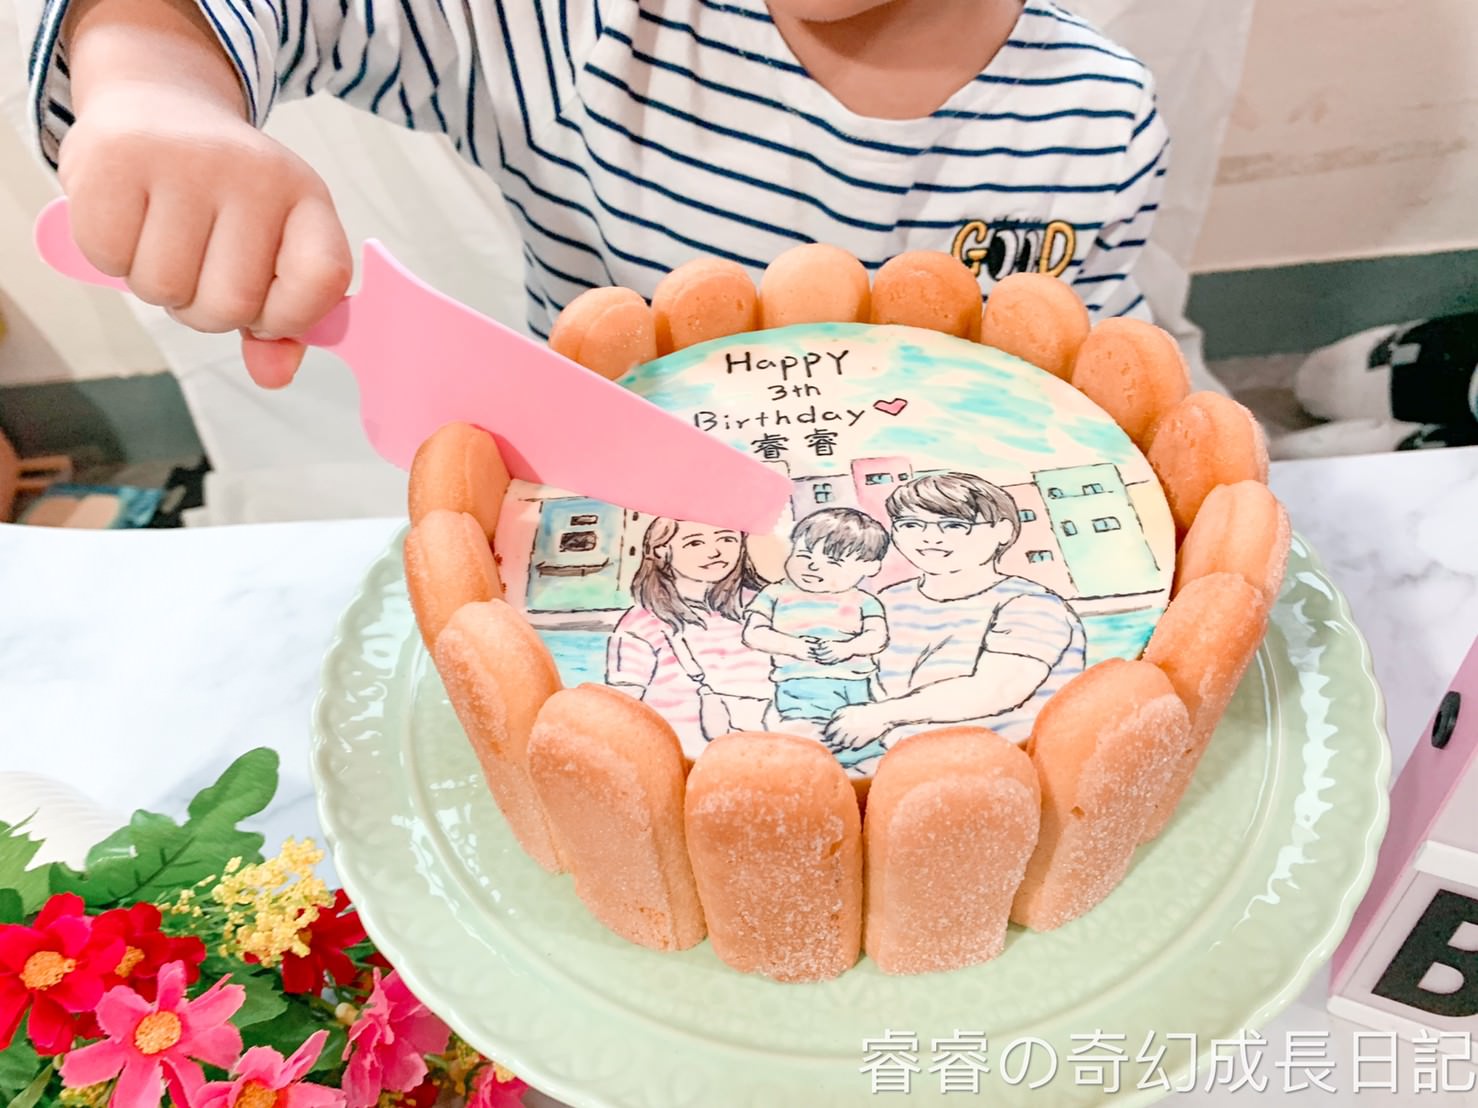 生日蛋糕 210109 16